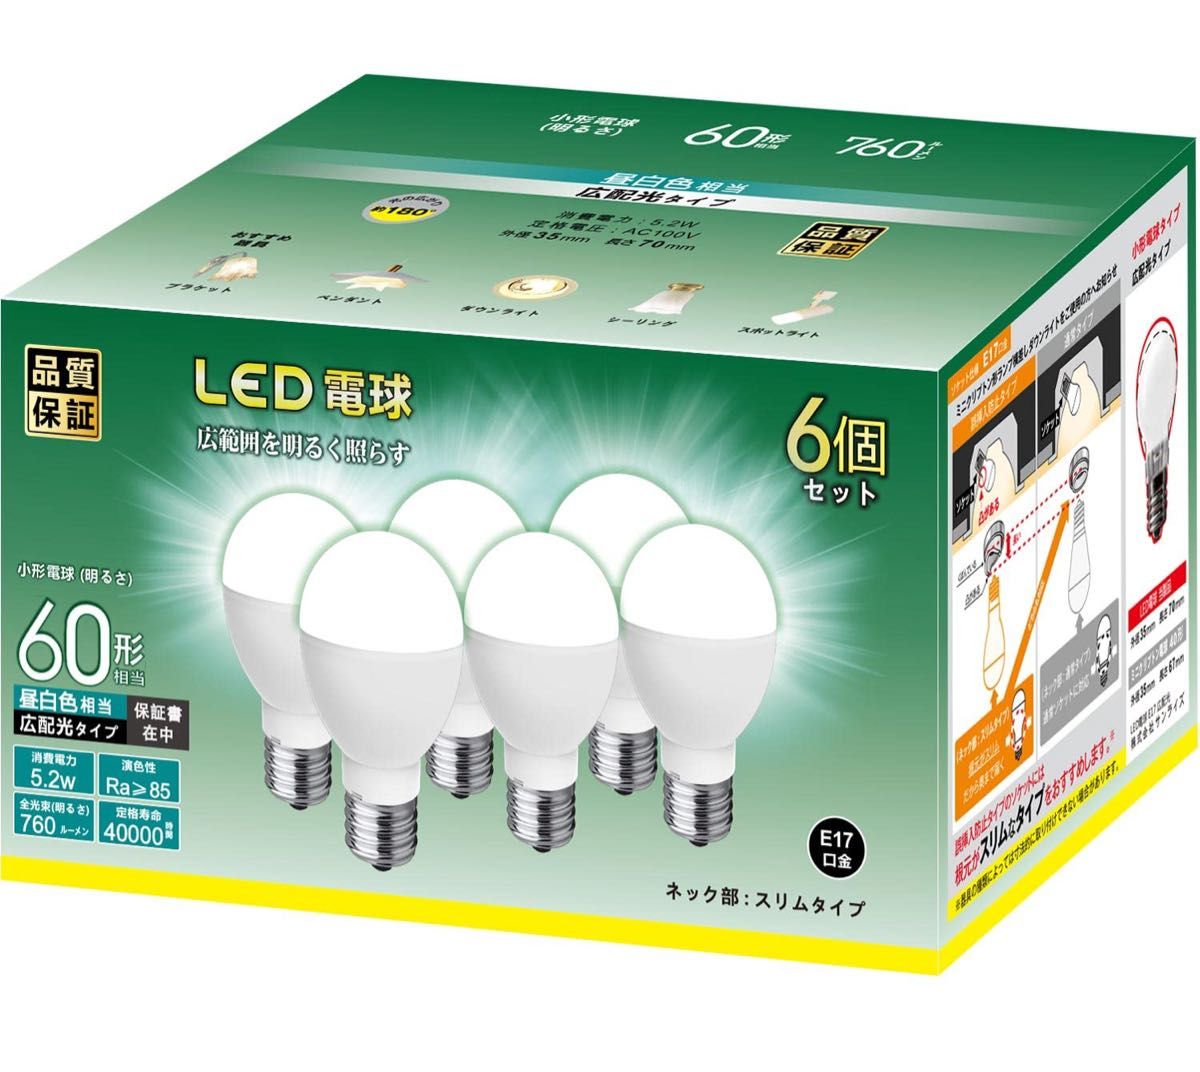 【現品限り】【早い者勝ち】LED電球 E17 昼白色 5Wミニクリプトン型 760lm 高輝度 広配光タイプ 6個セット